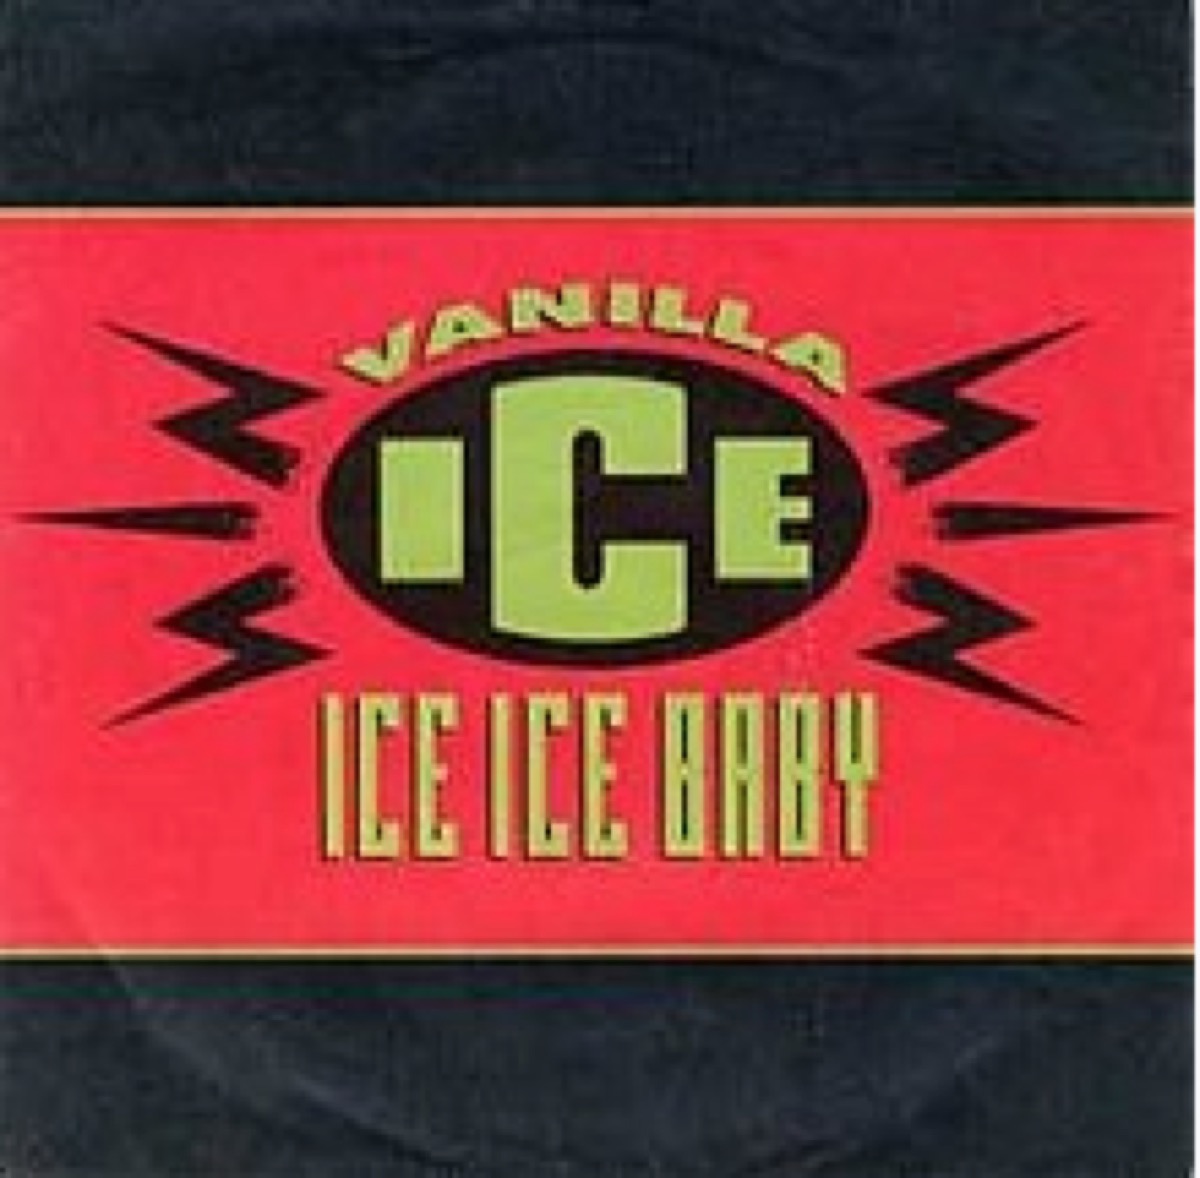 "ice ice baby" album cover